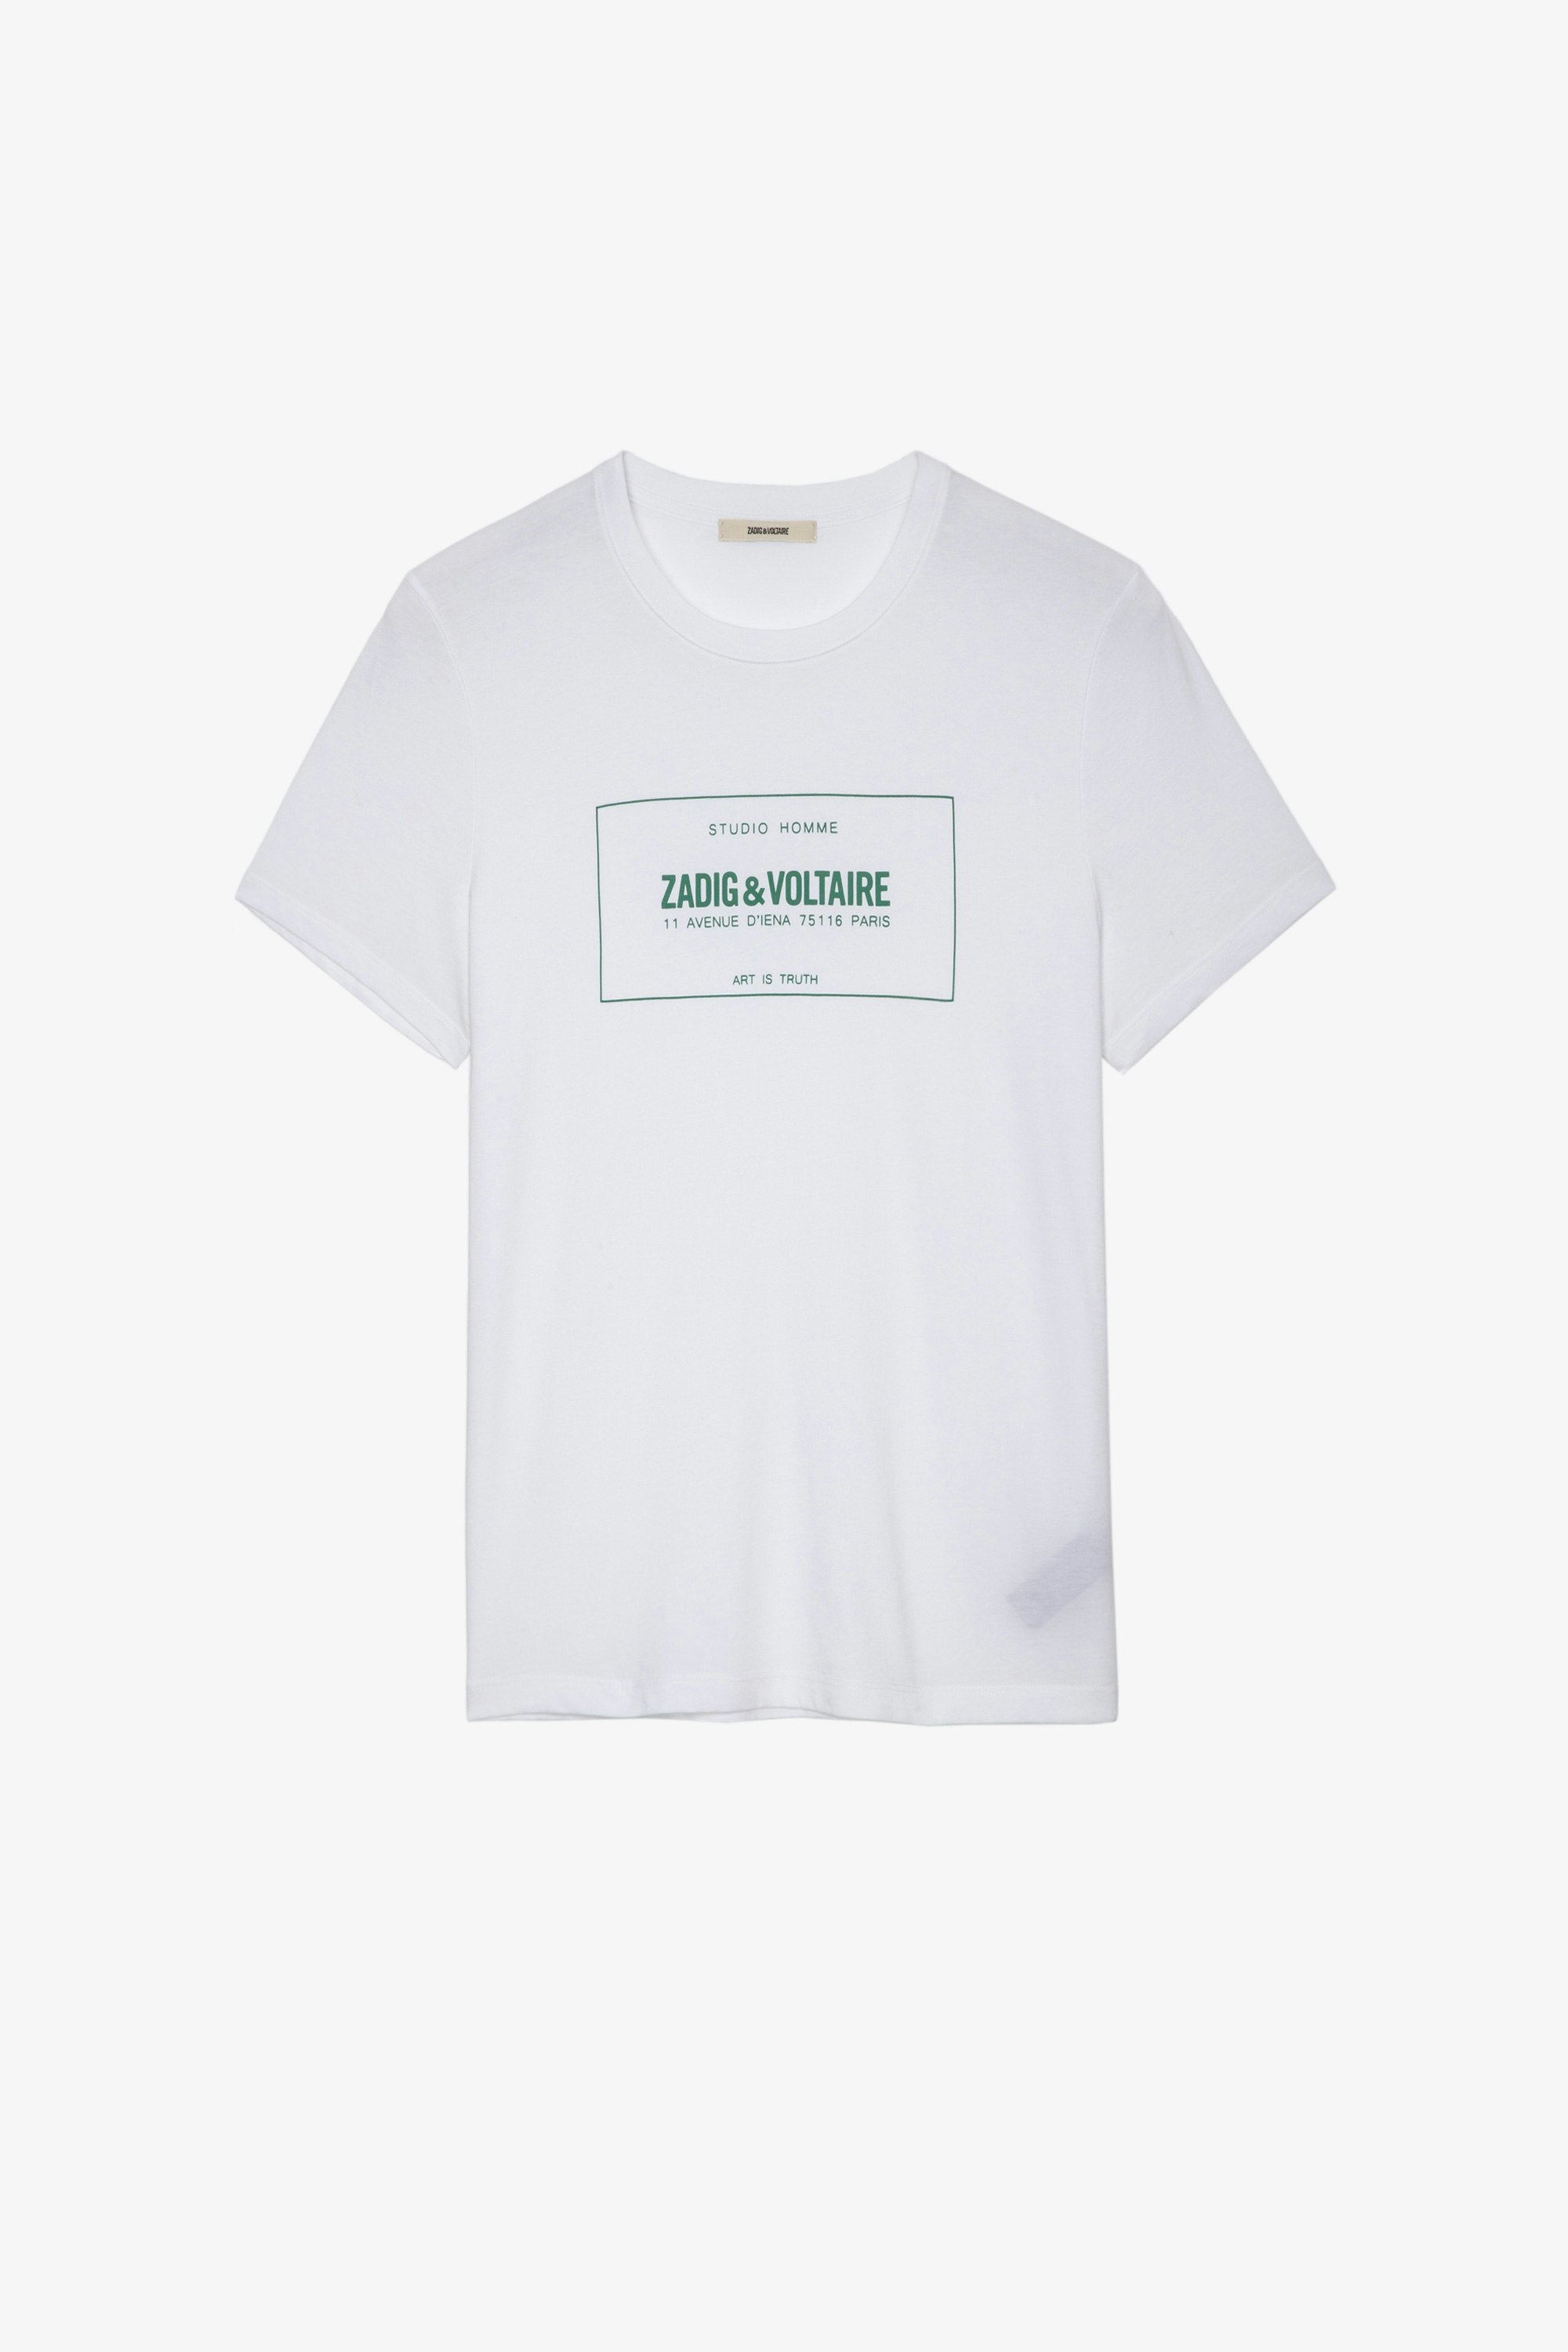 Camiseta Ted Blason Camiseta blanca de algodón para hombre con blasón de la marca